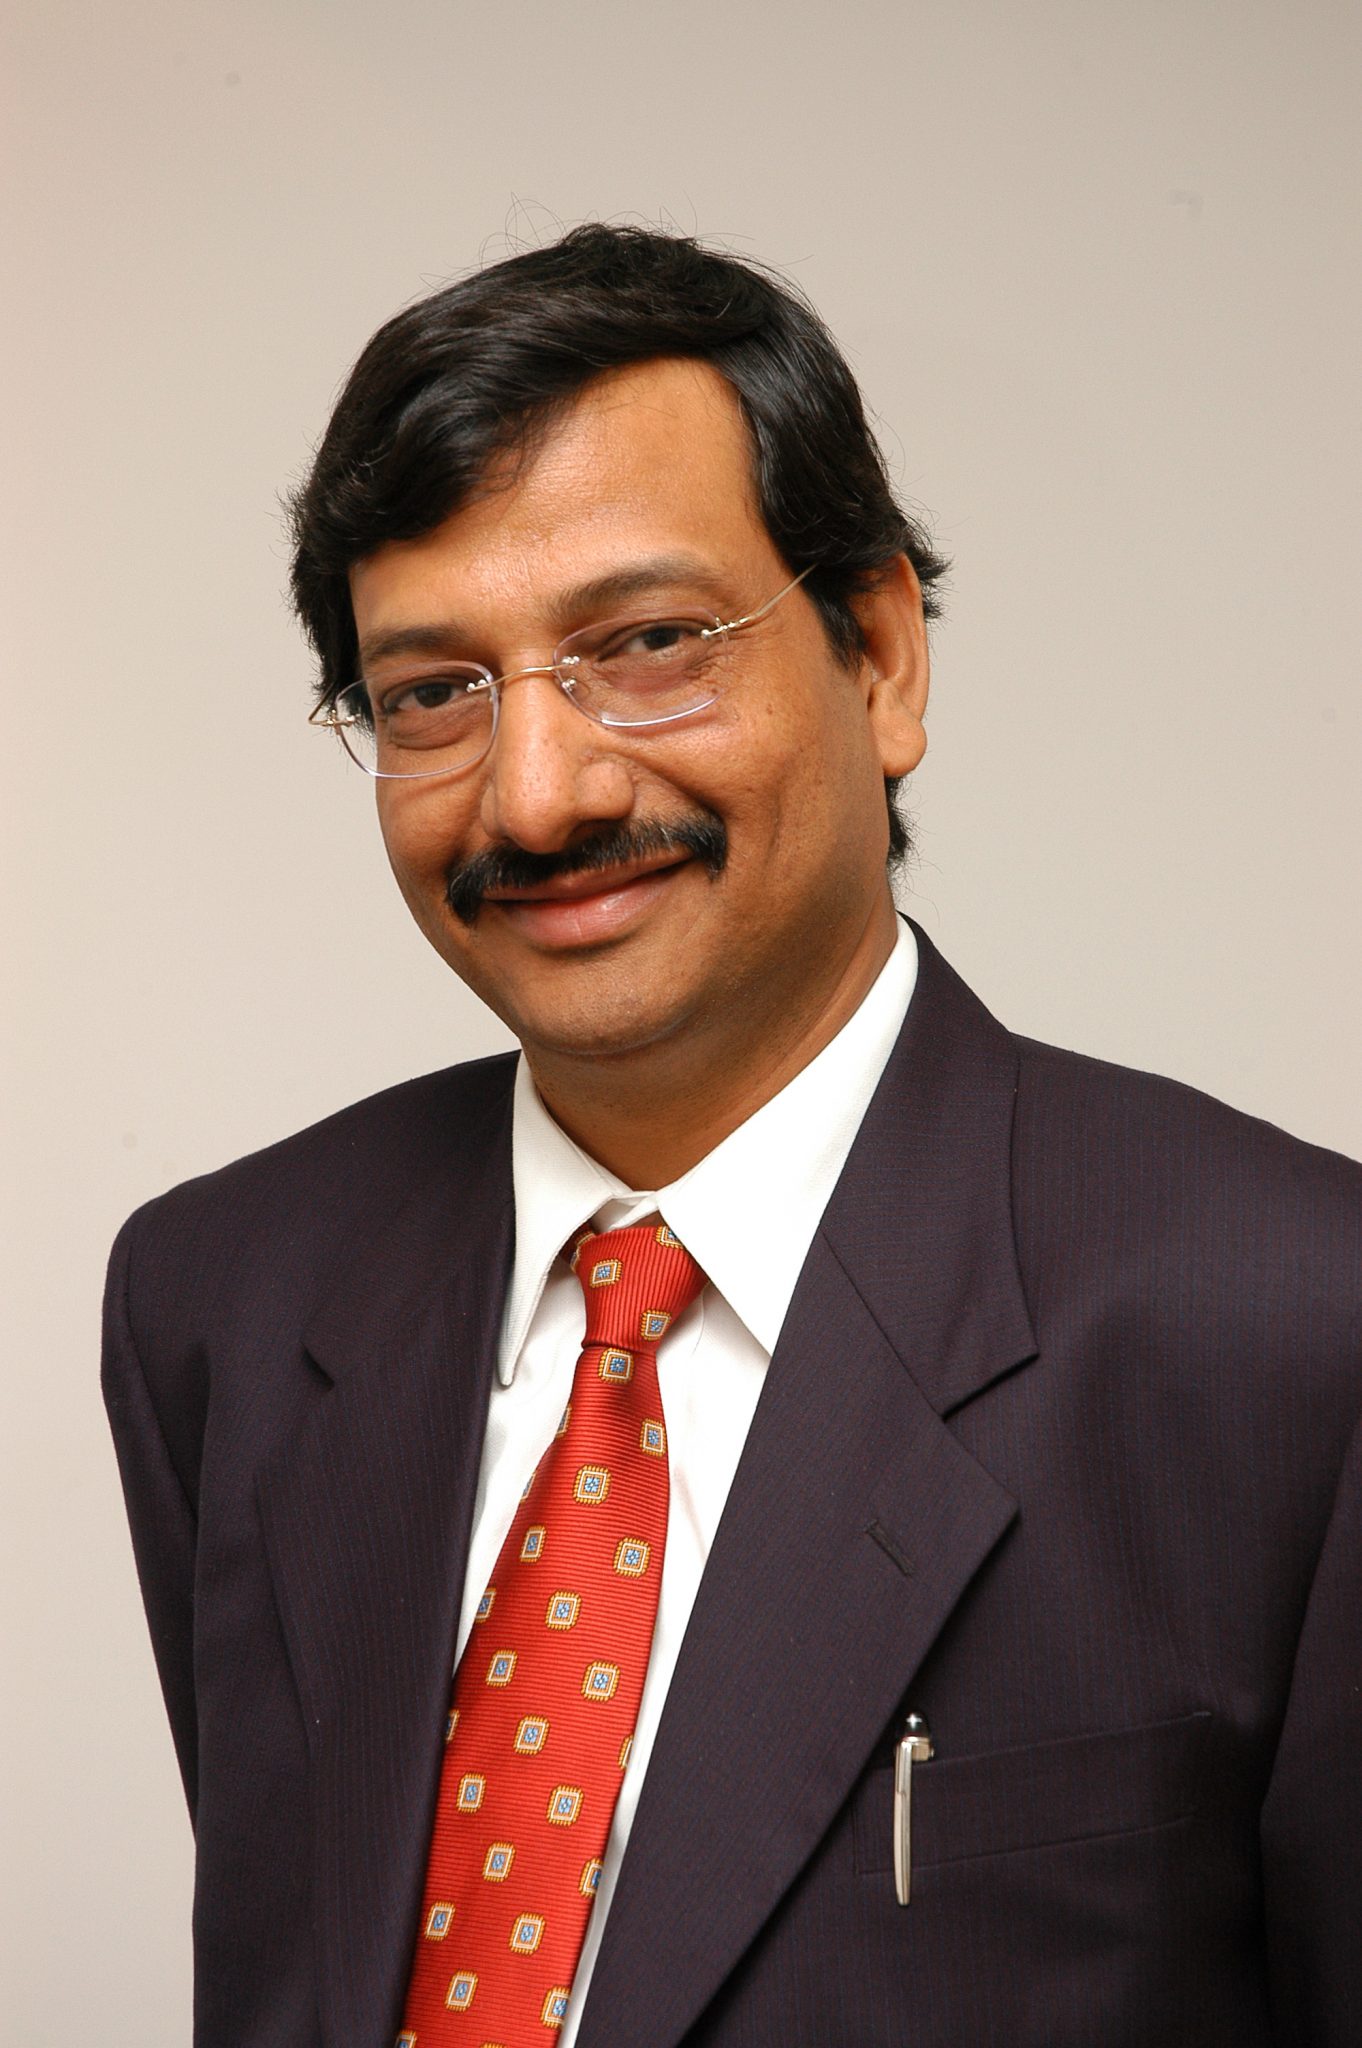 Arun Jain, Intellect's CEO